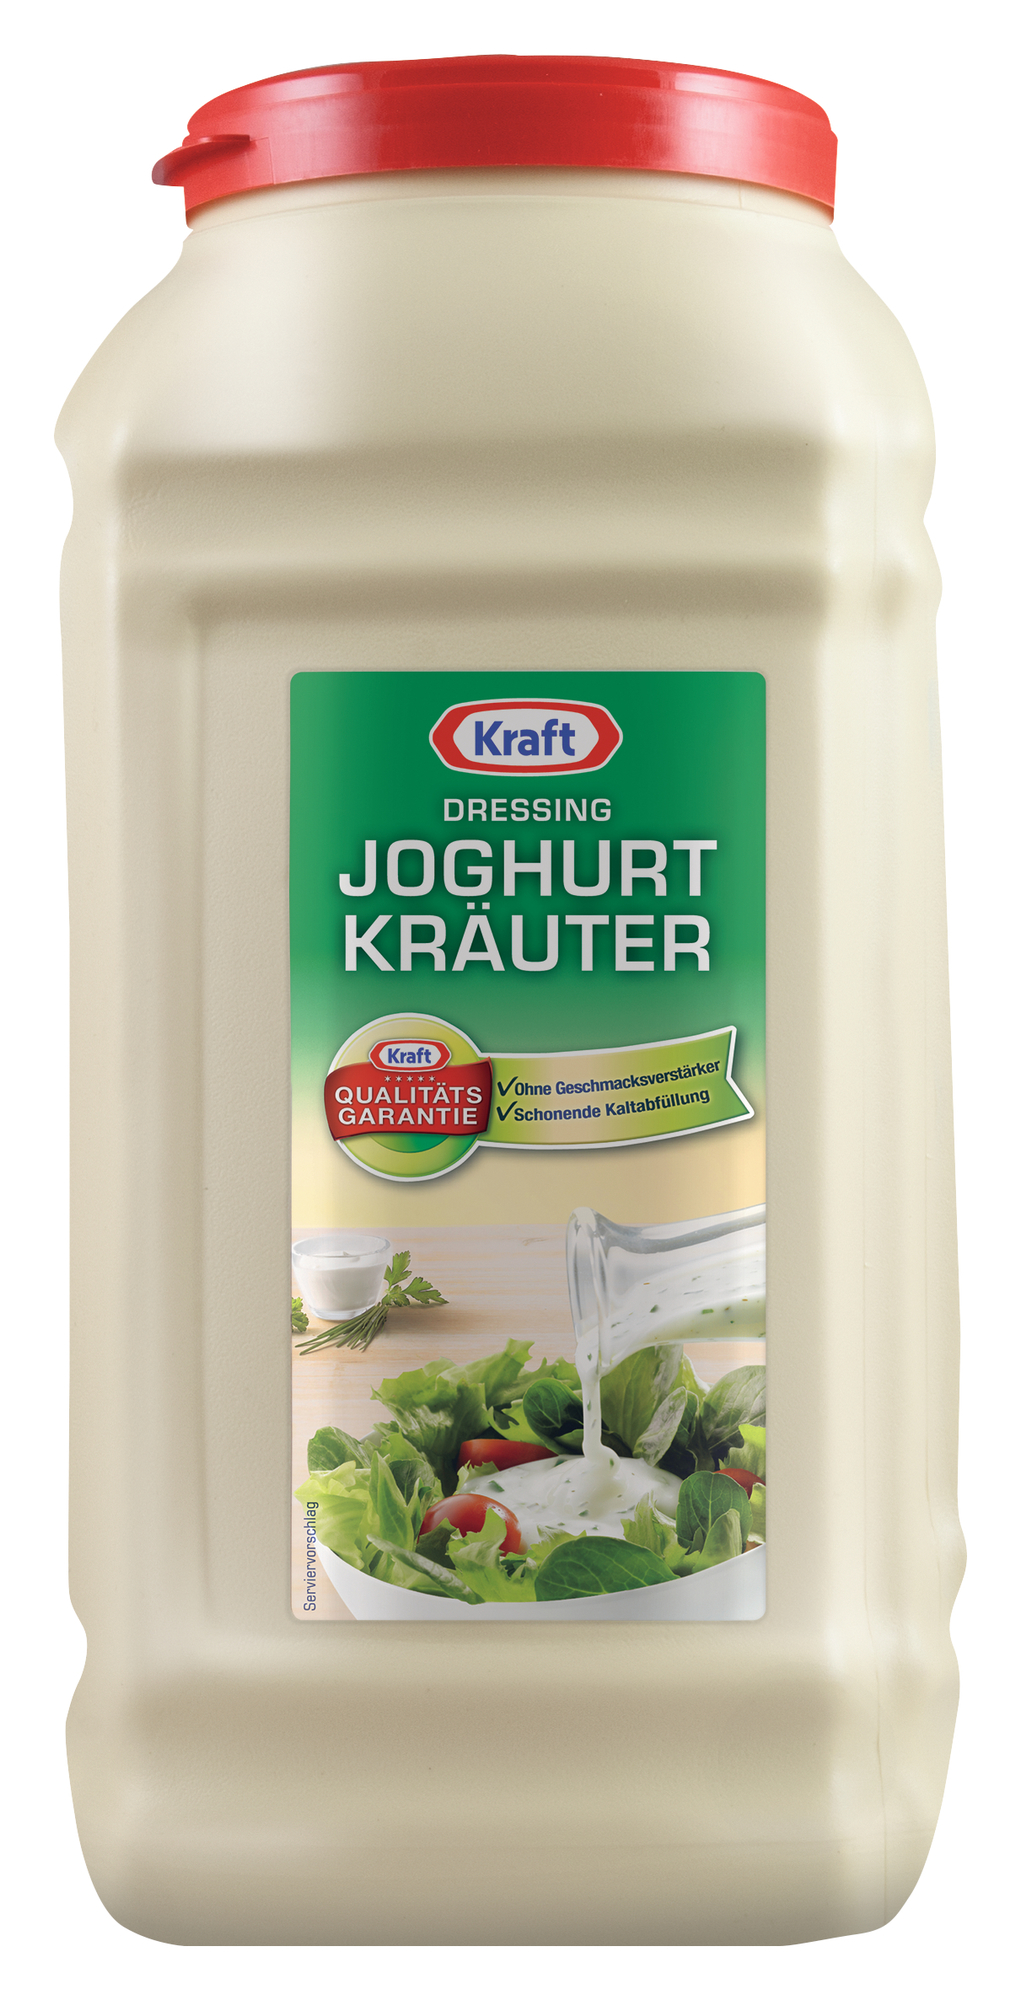 Joghurt Kräuter Dressing 5000ml